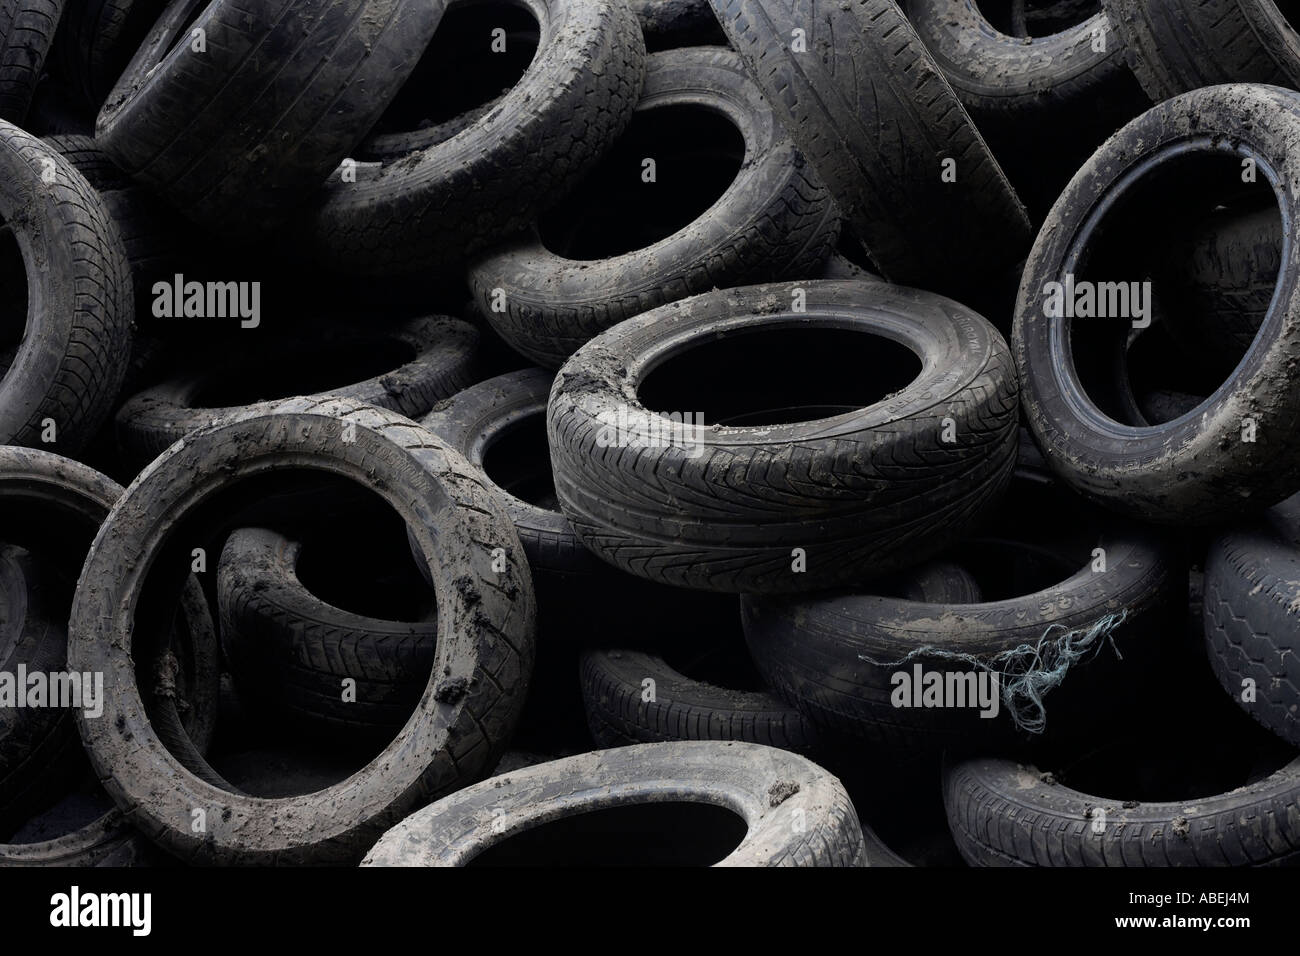 Ein Haufen von verlassenen Pkw-Reifen (Reifen) sind links auf einer Brache in Stratford, künftigen Standort der Olympischen Spiele 2012, London UK. Stockfoto